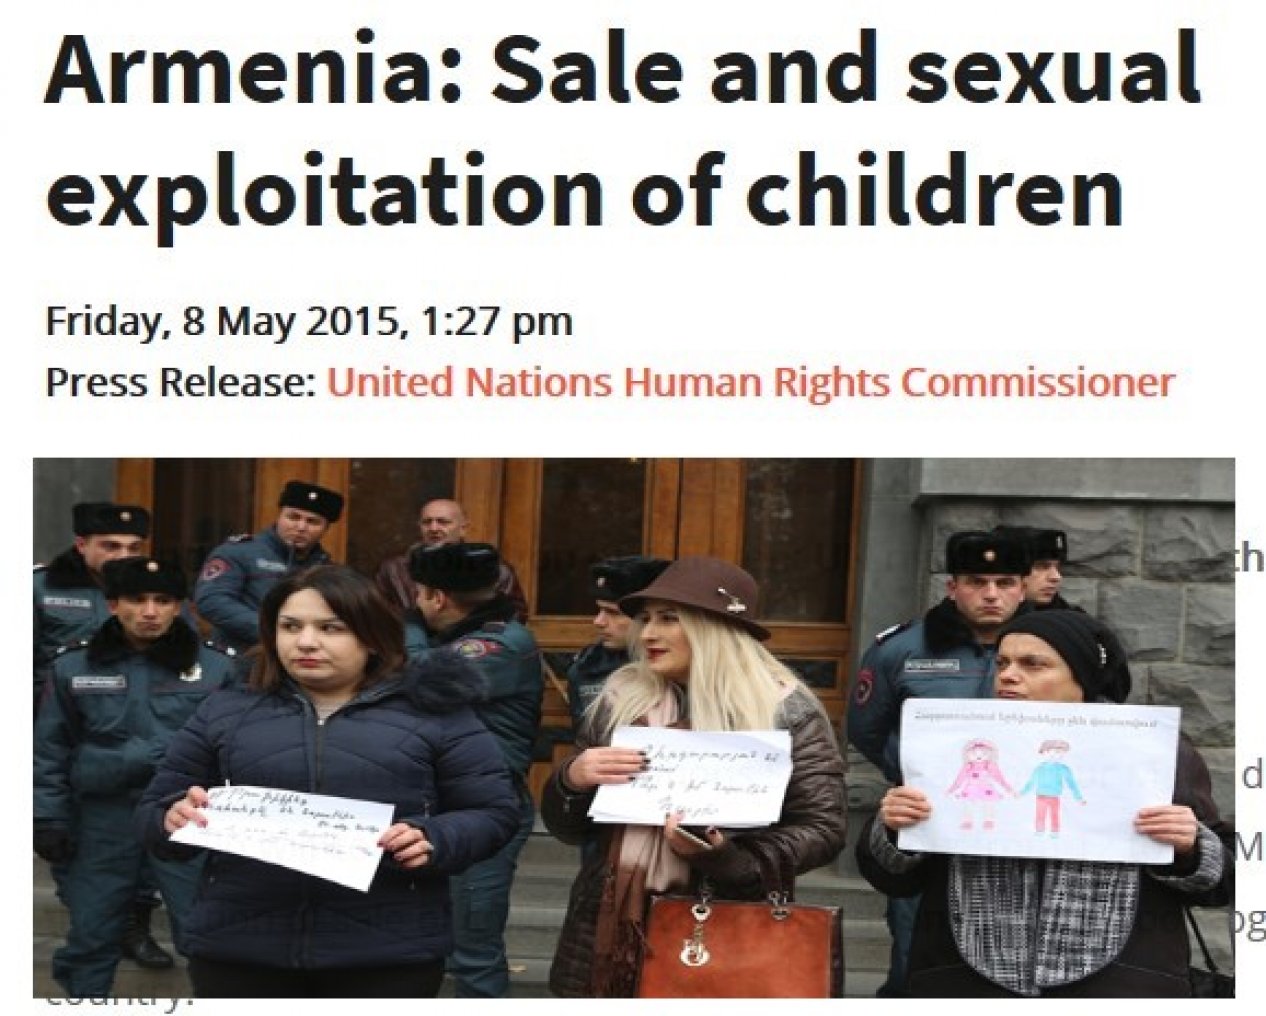 Ermenistan’da çocukların yasa dışı yollarla yabancı ailelere satılması olgusu gerçek mi?!